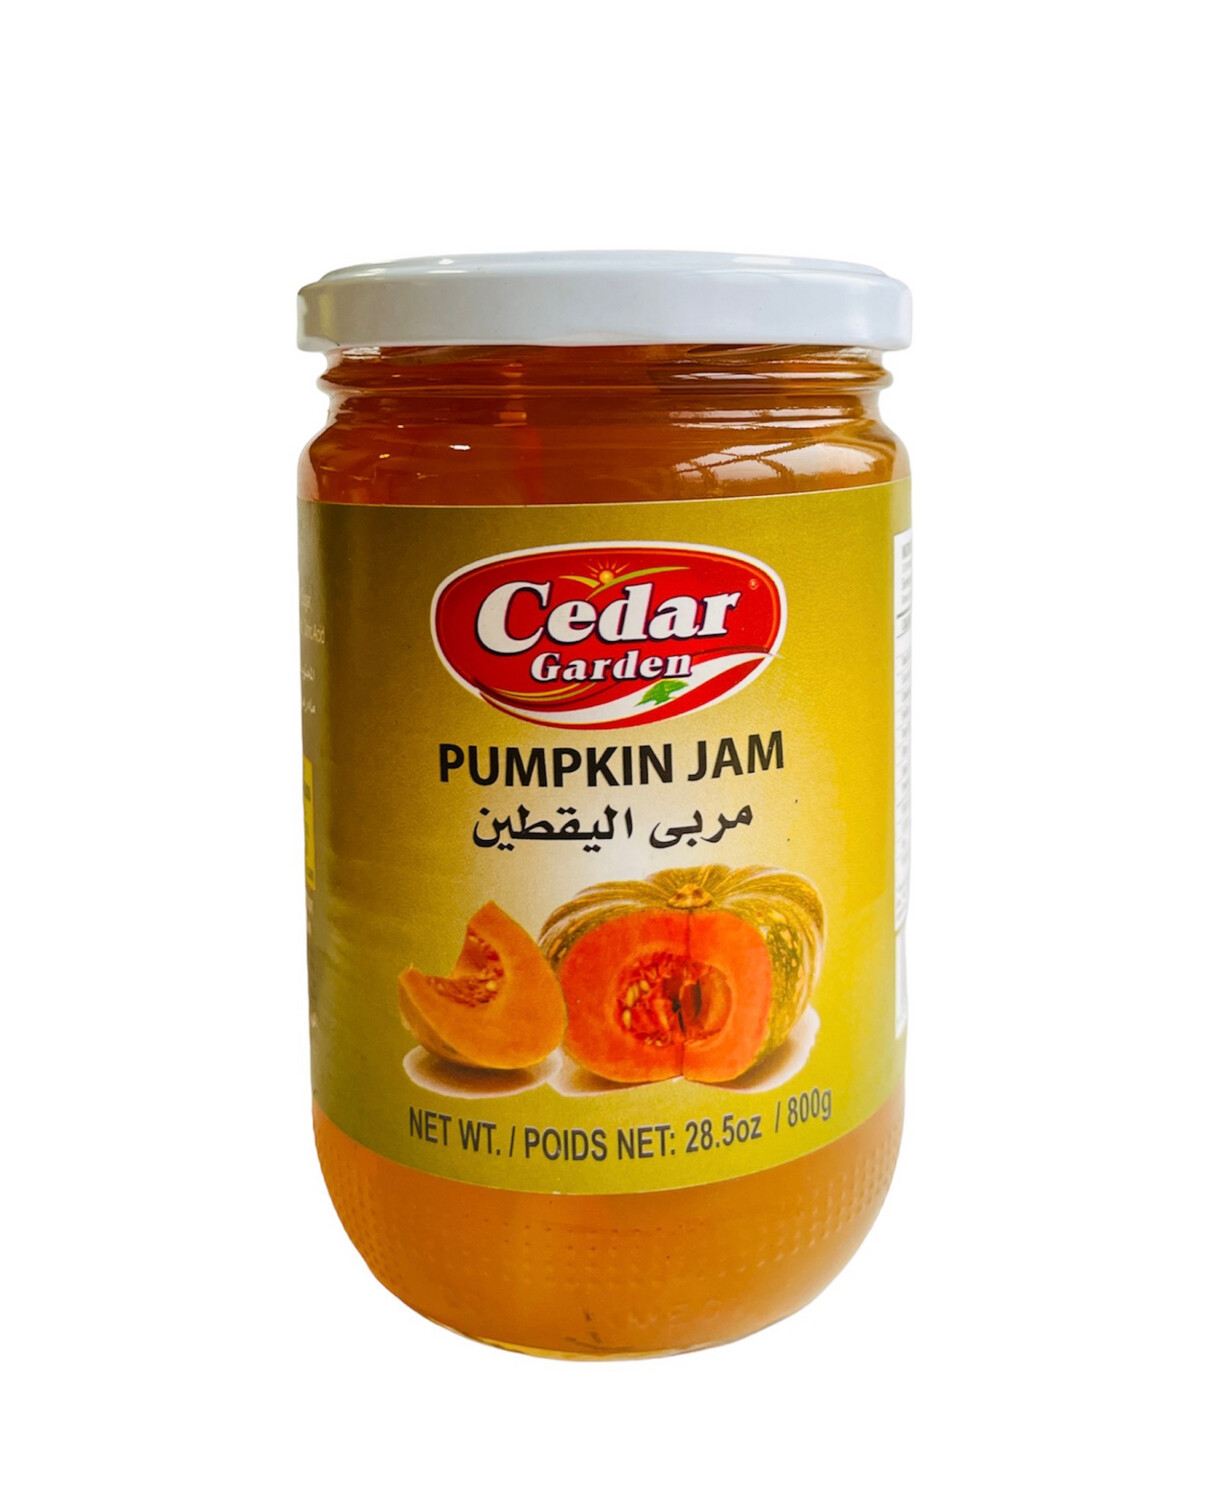 Cedar Garden Pumpkin Jam 12x800g